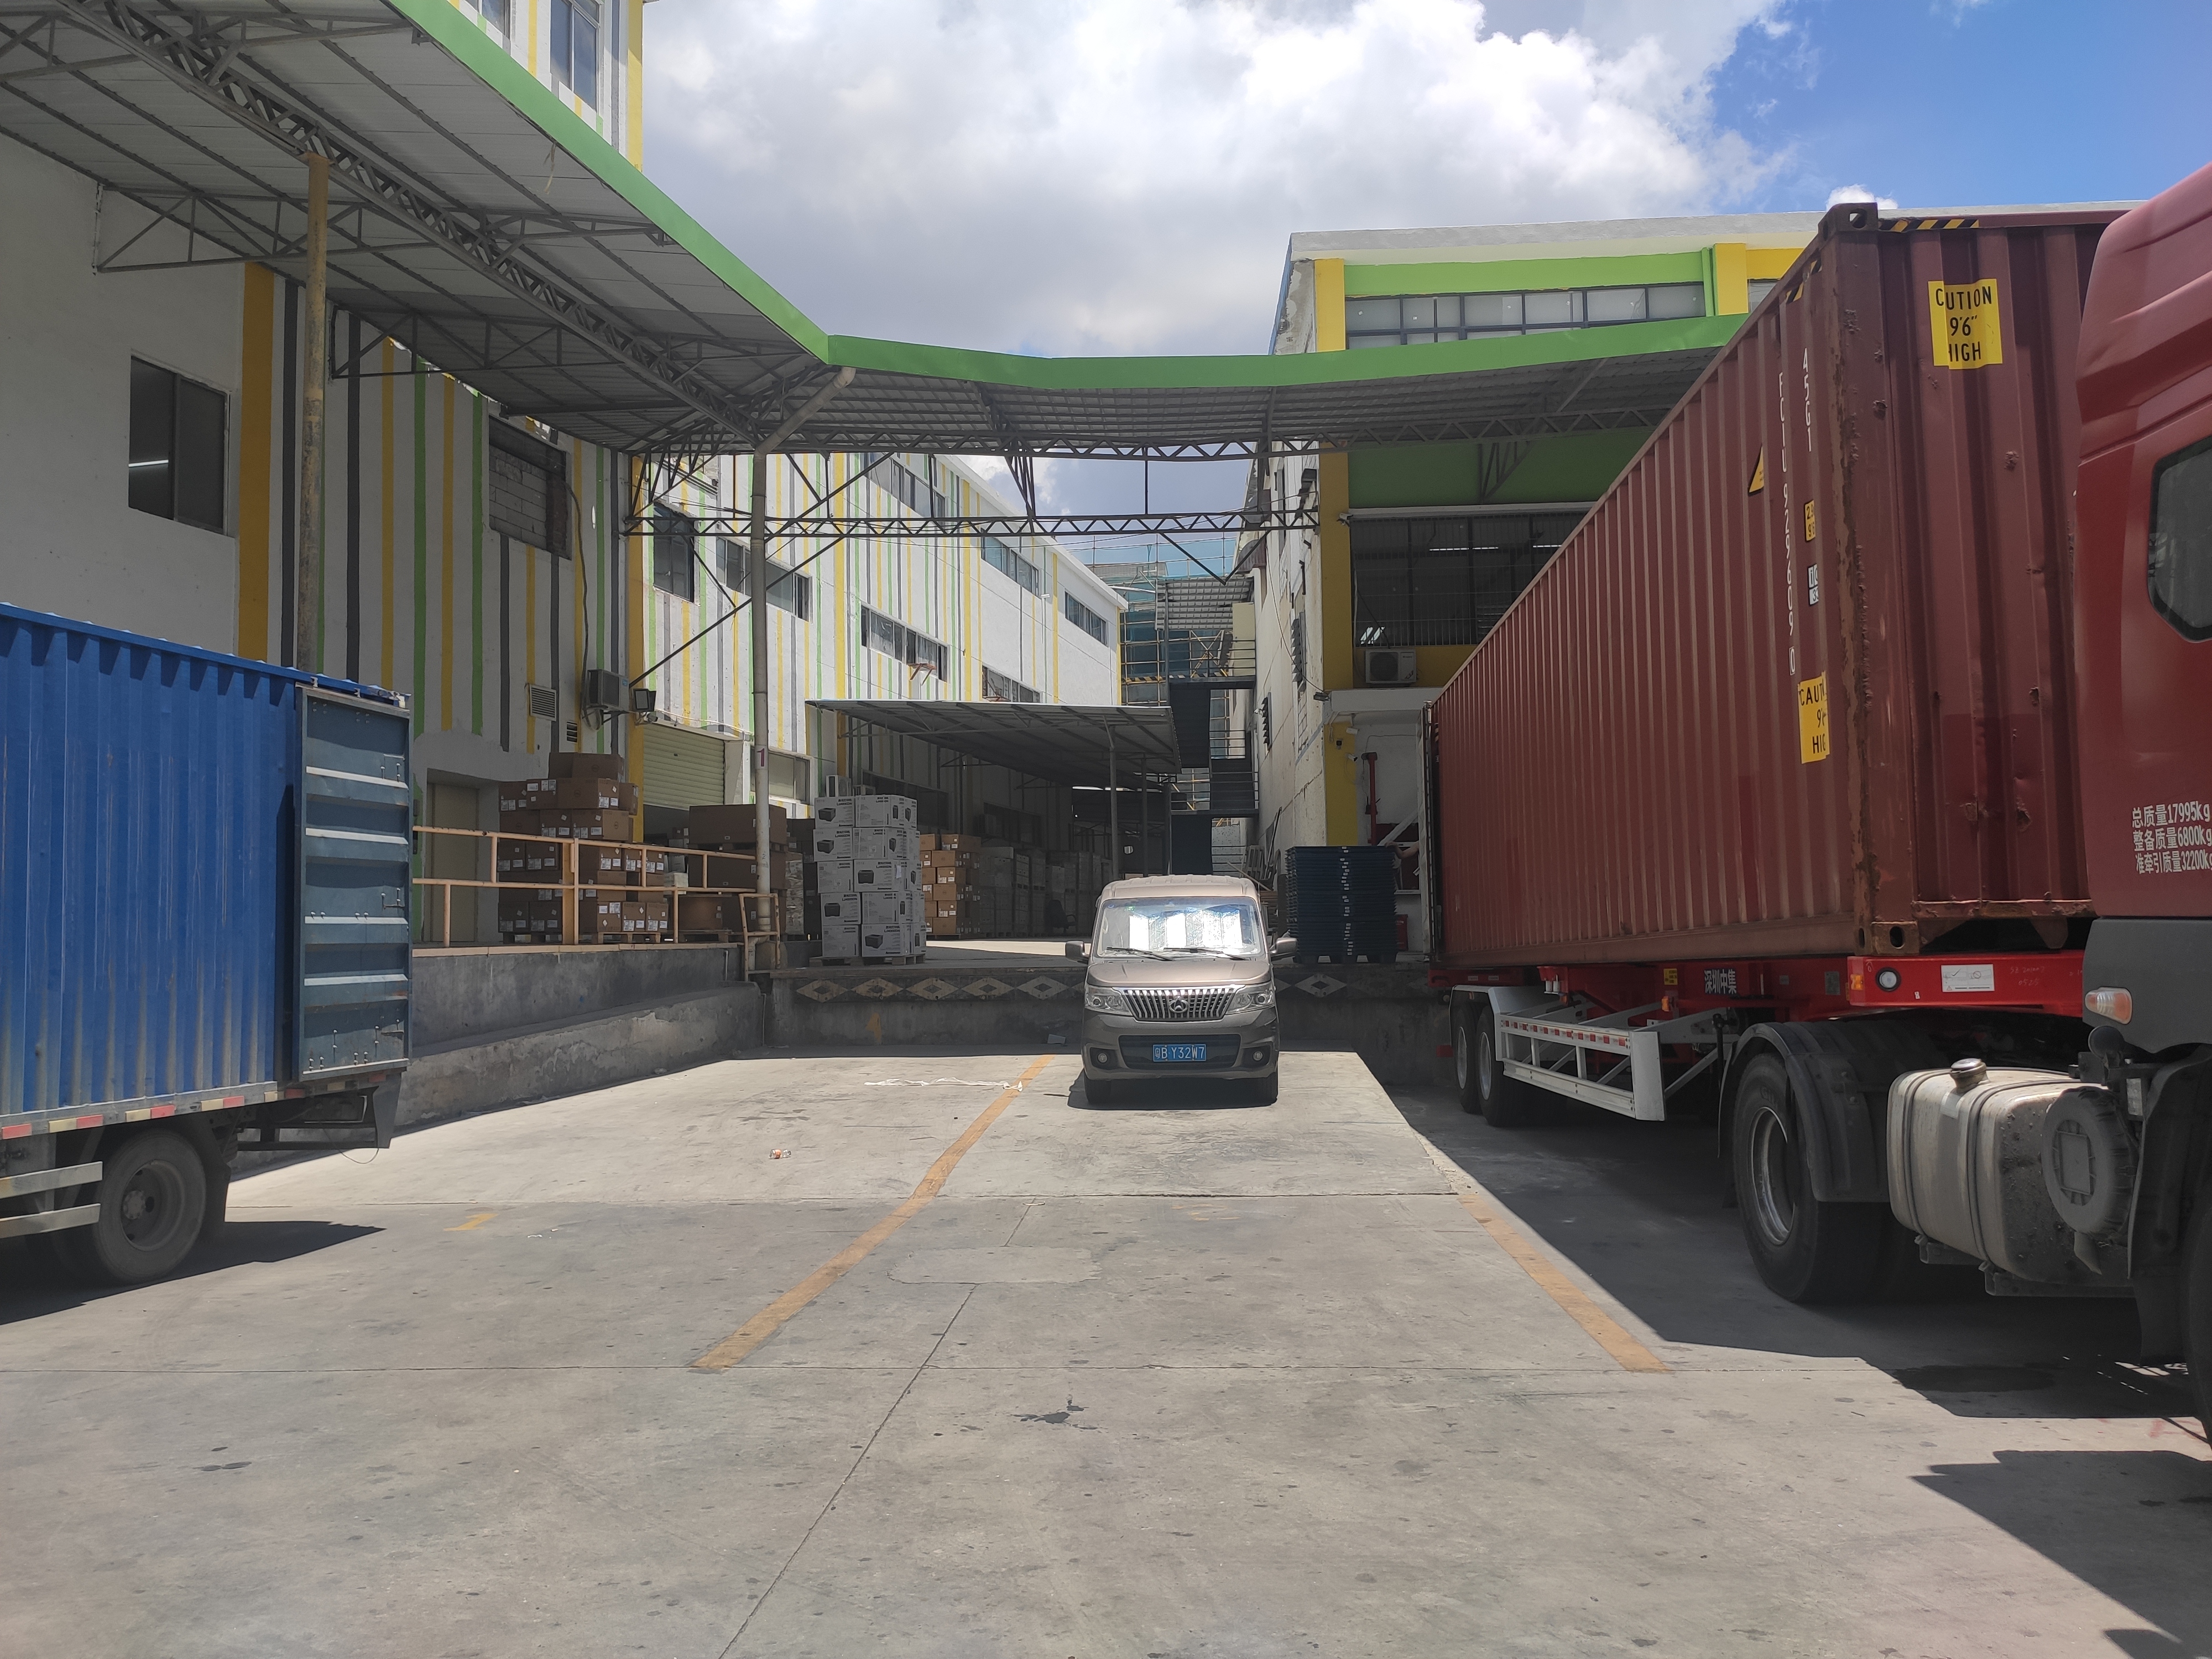 布吉南岭新出一楼1200平标准厂房仓库出租带卸货平台。